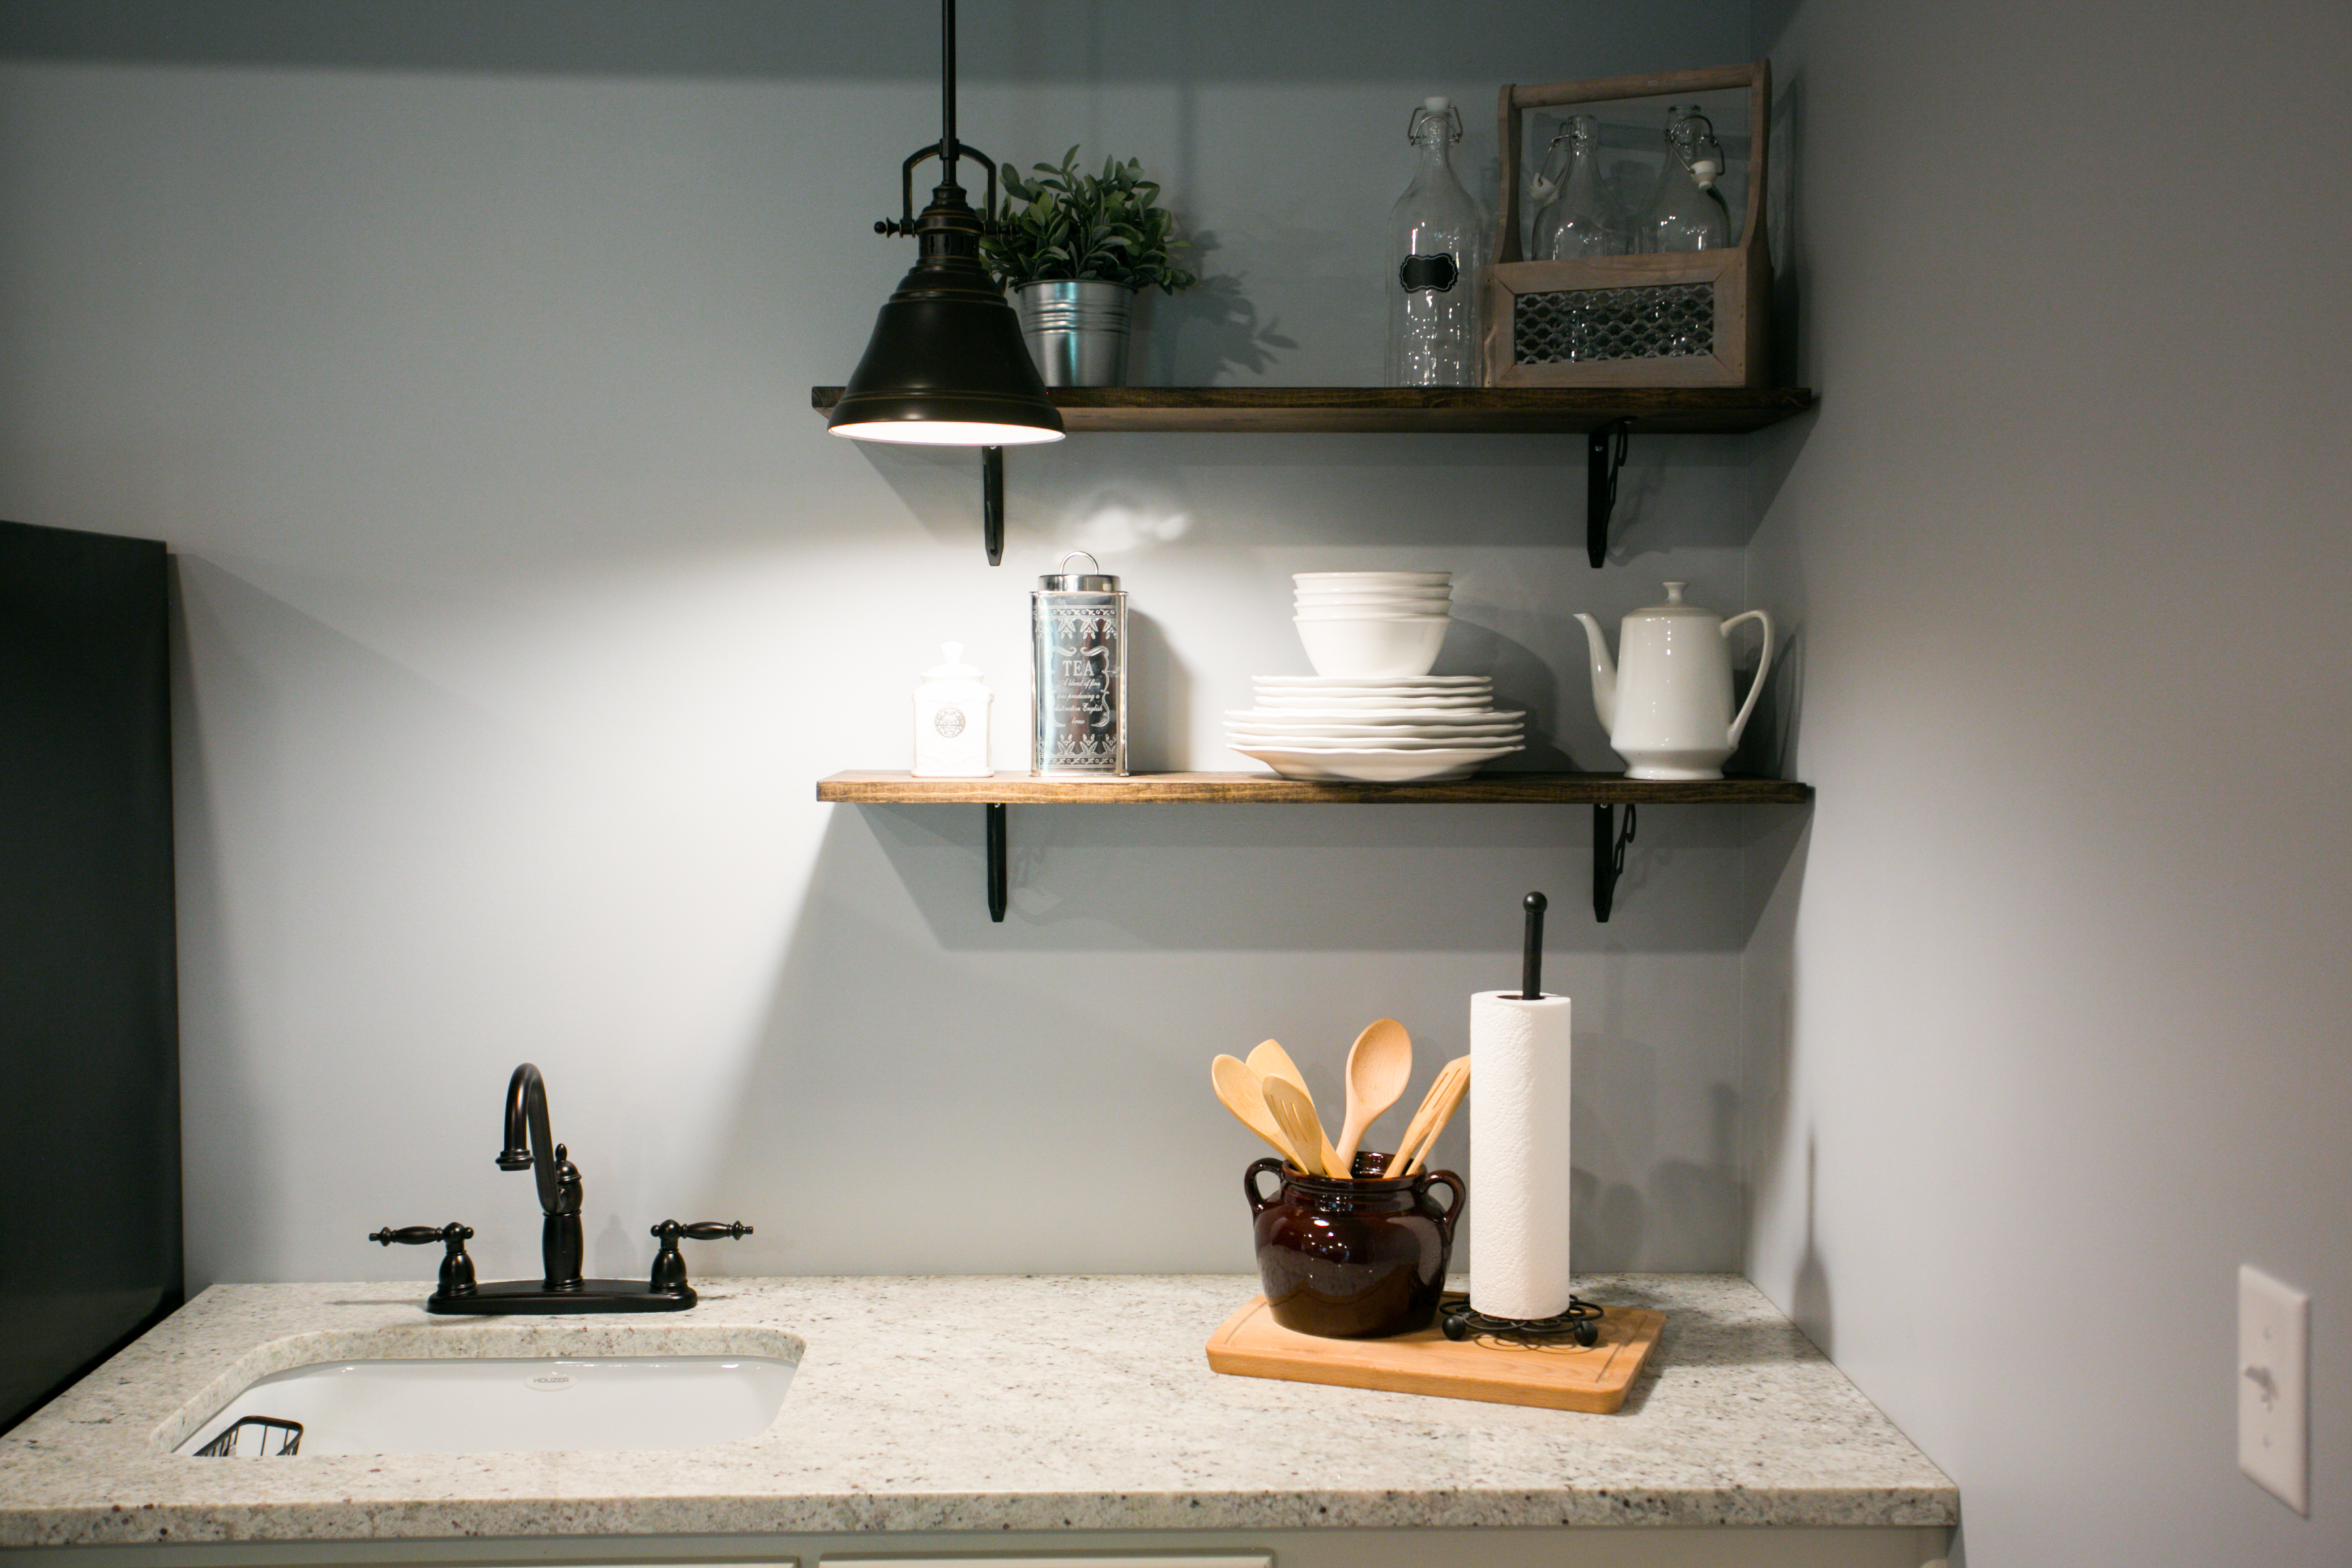 granite countertop-minimal shelving-